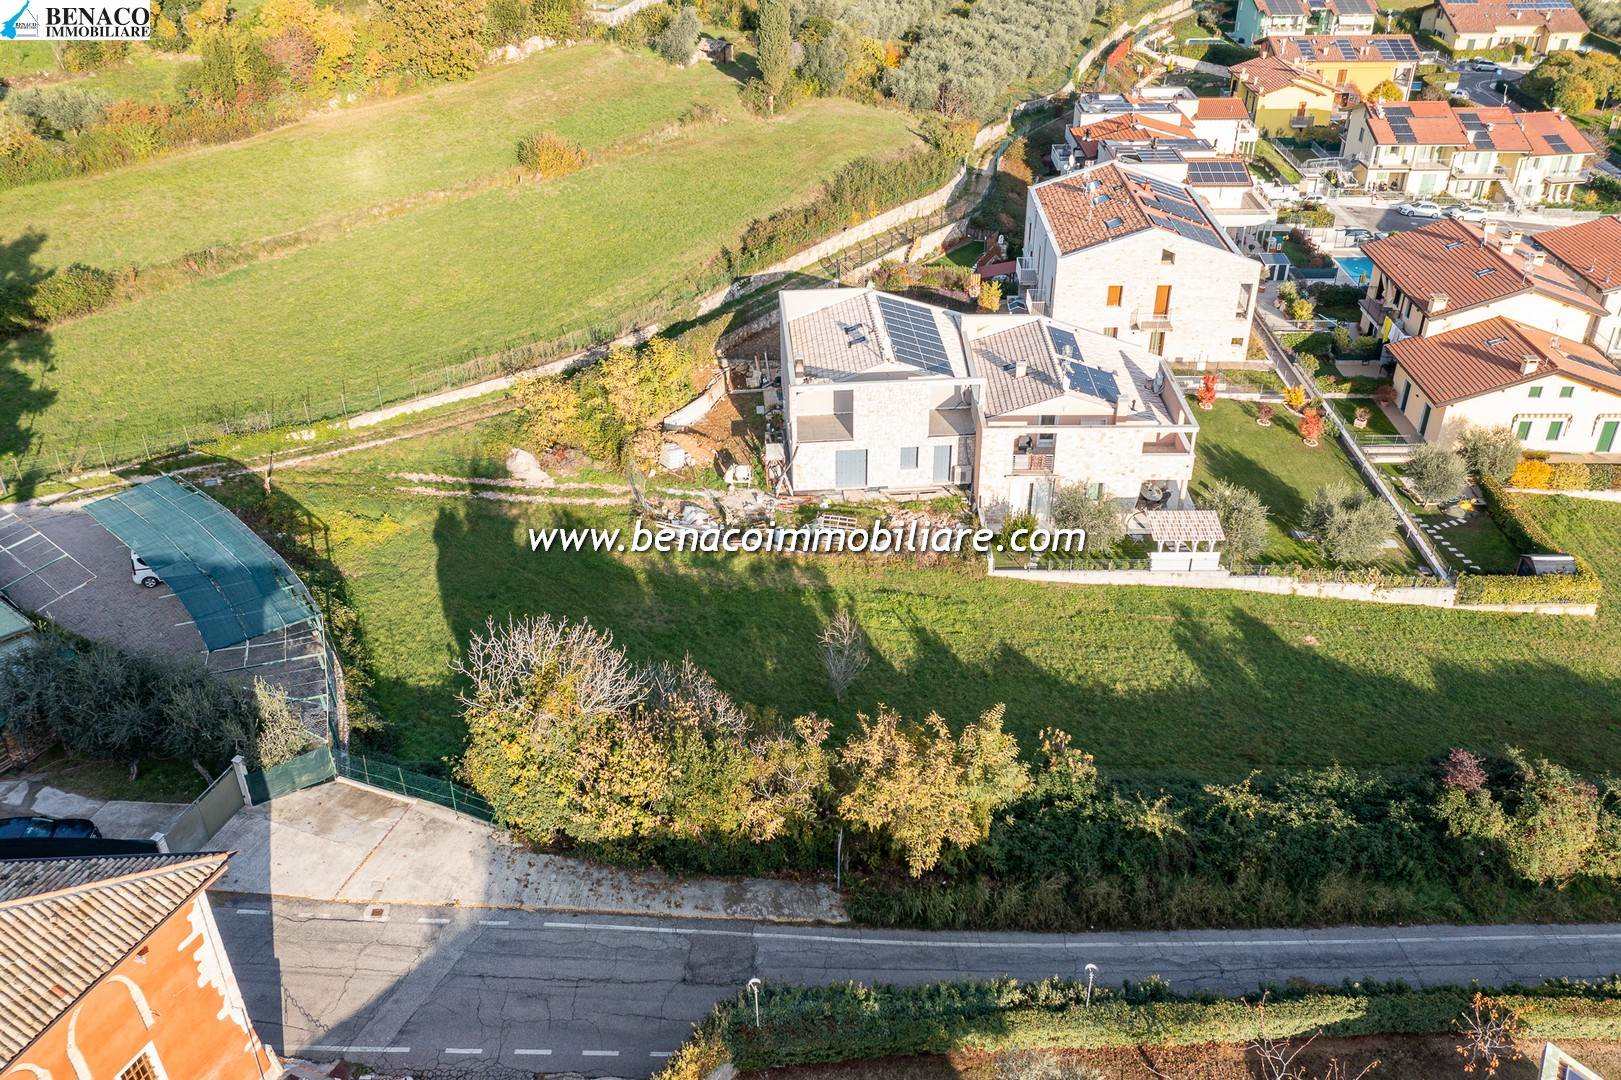 Terreno Edificabile Residenziale in vendita a Caprino Veronese, 9999 locali, Trattative riservate | PortaleAgenzieImmobiliari.it